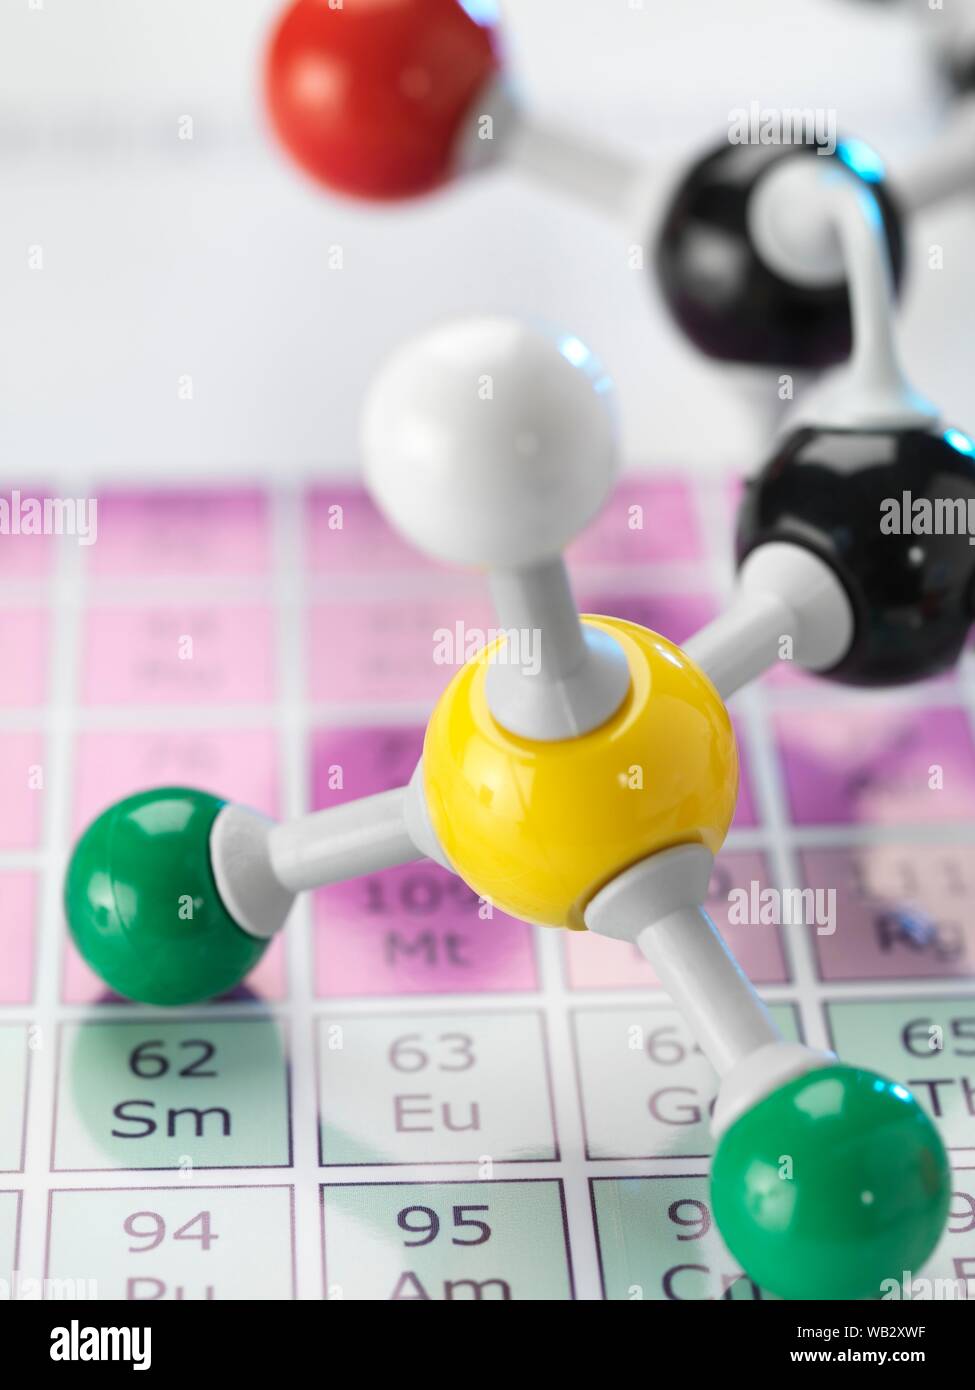 La chimie, conceptual image. Ball and Stick modèle moléculaire assis sur un tableau périodique Banque D'Images